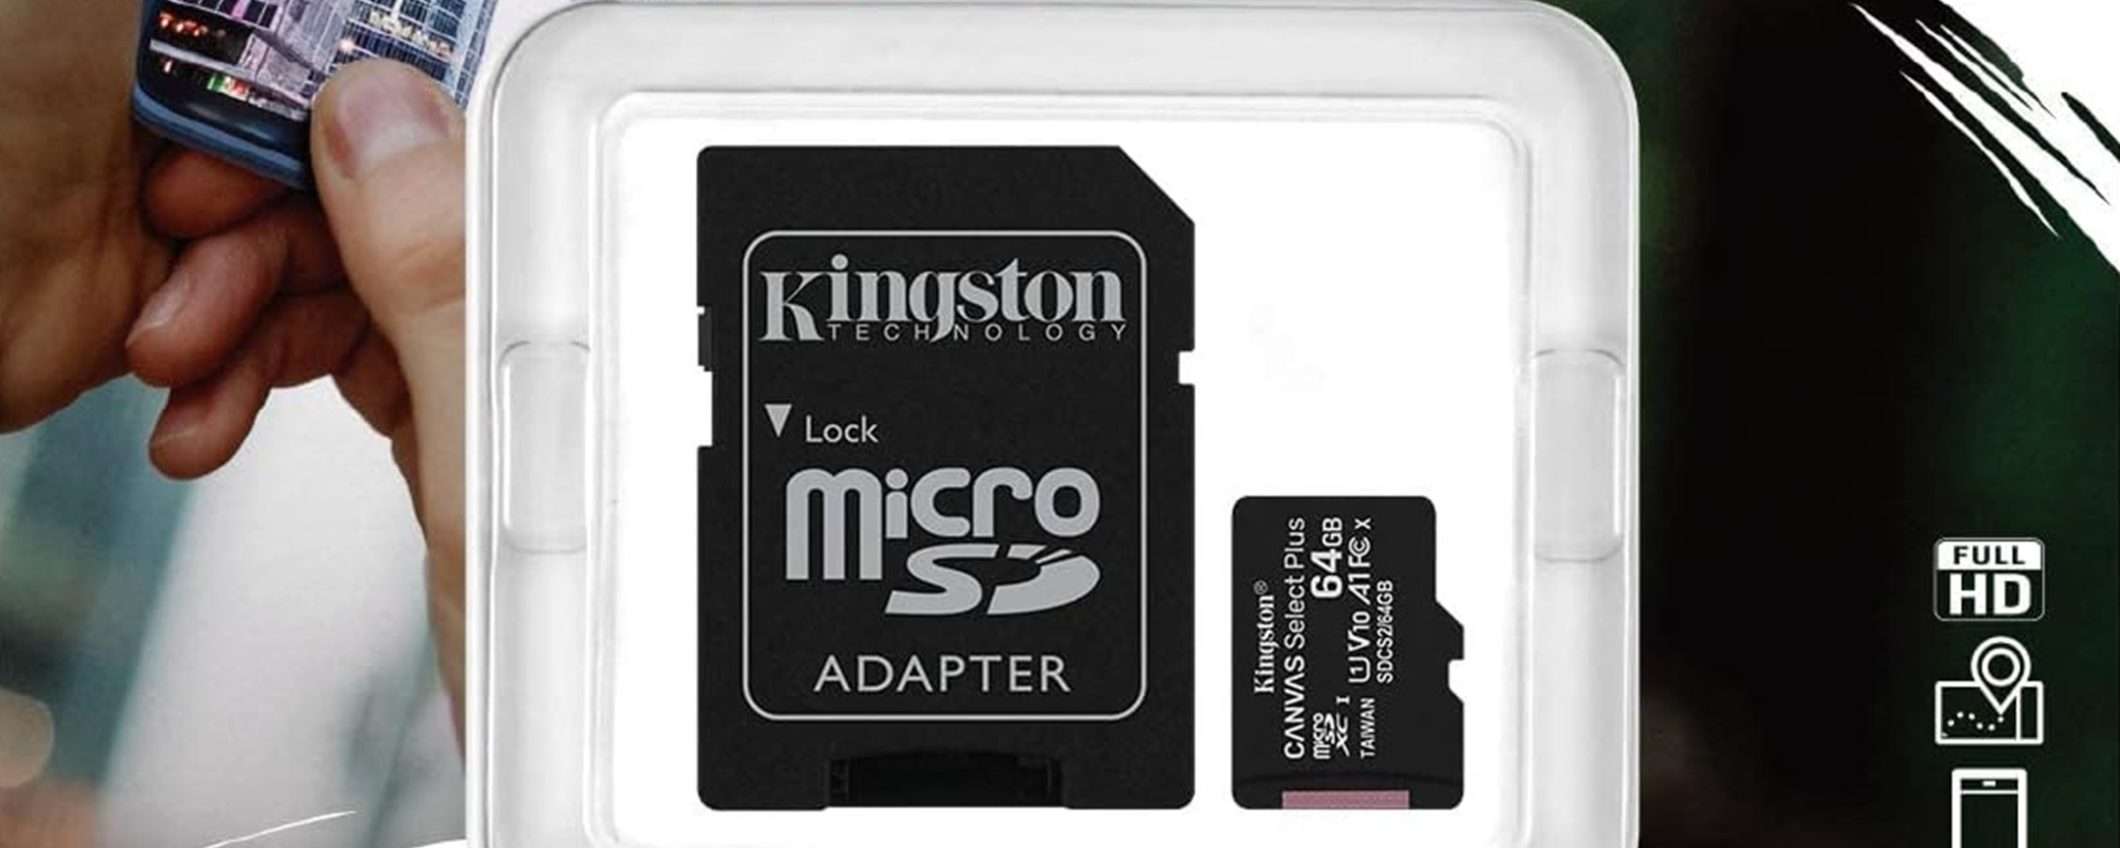 MicroSD Kingston + adattatore SD da 64GB a soli 5€ su Amazon